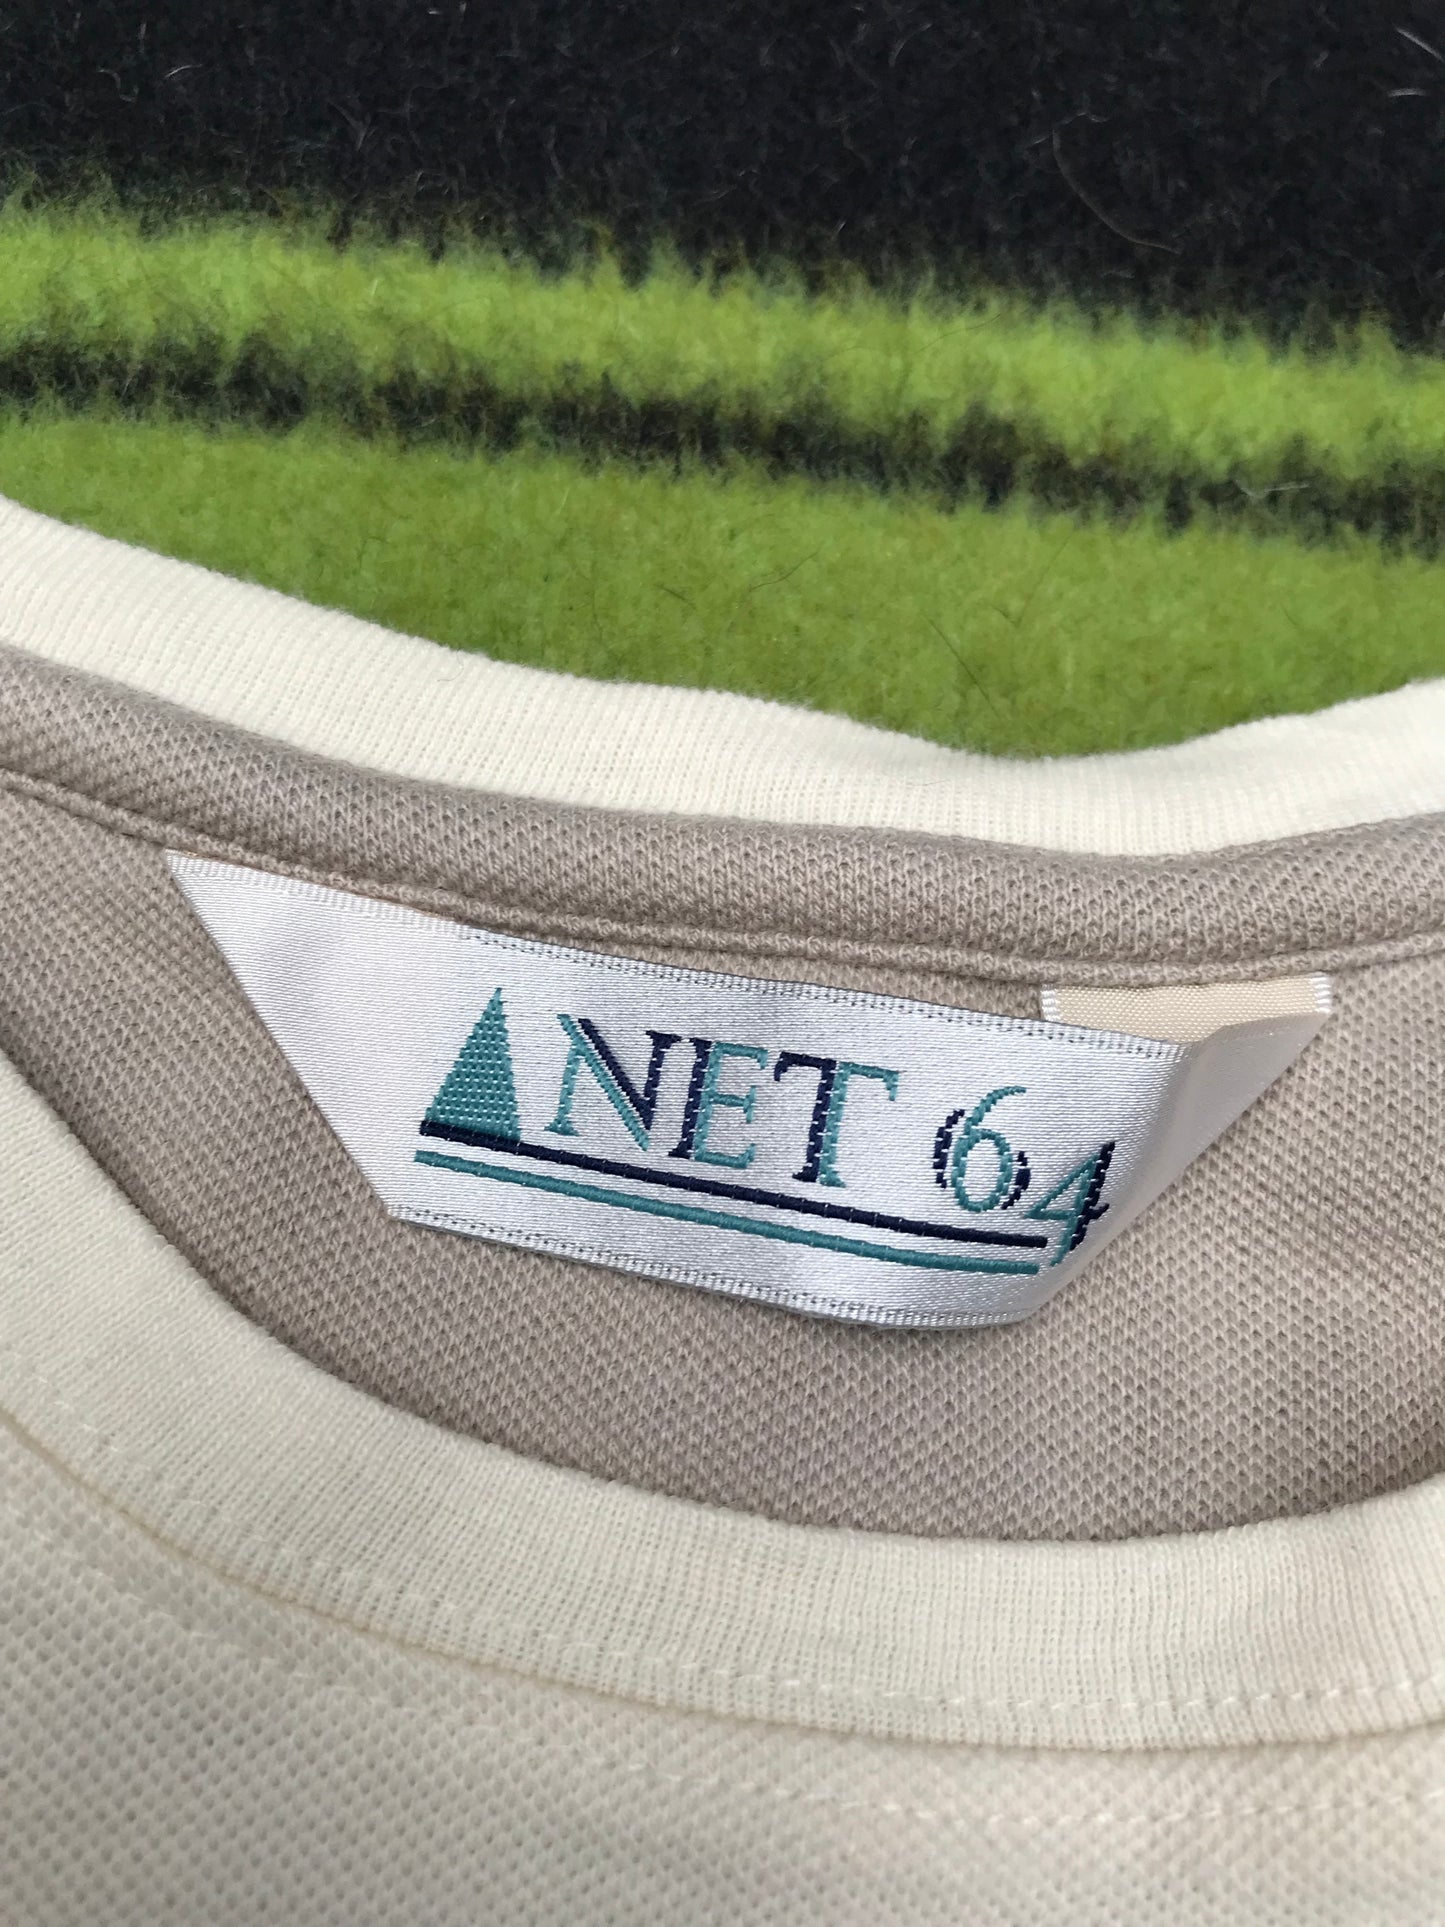 Net 64 cream Tshirt size M FREE POSTAGE